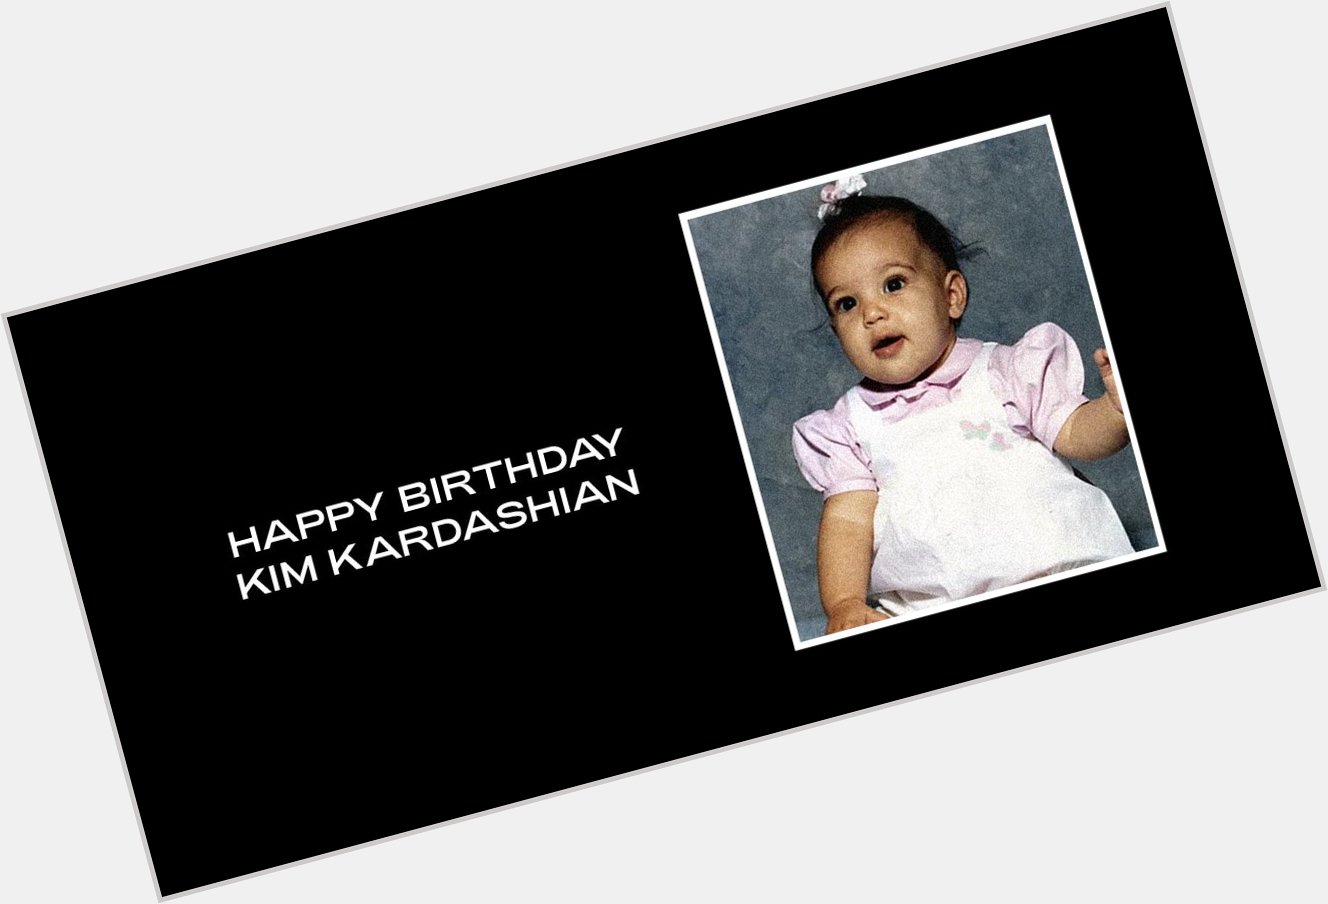 Beyoncé wishes Kim Kardashian a happy birthday via her website!  